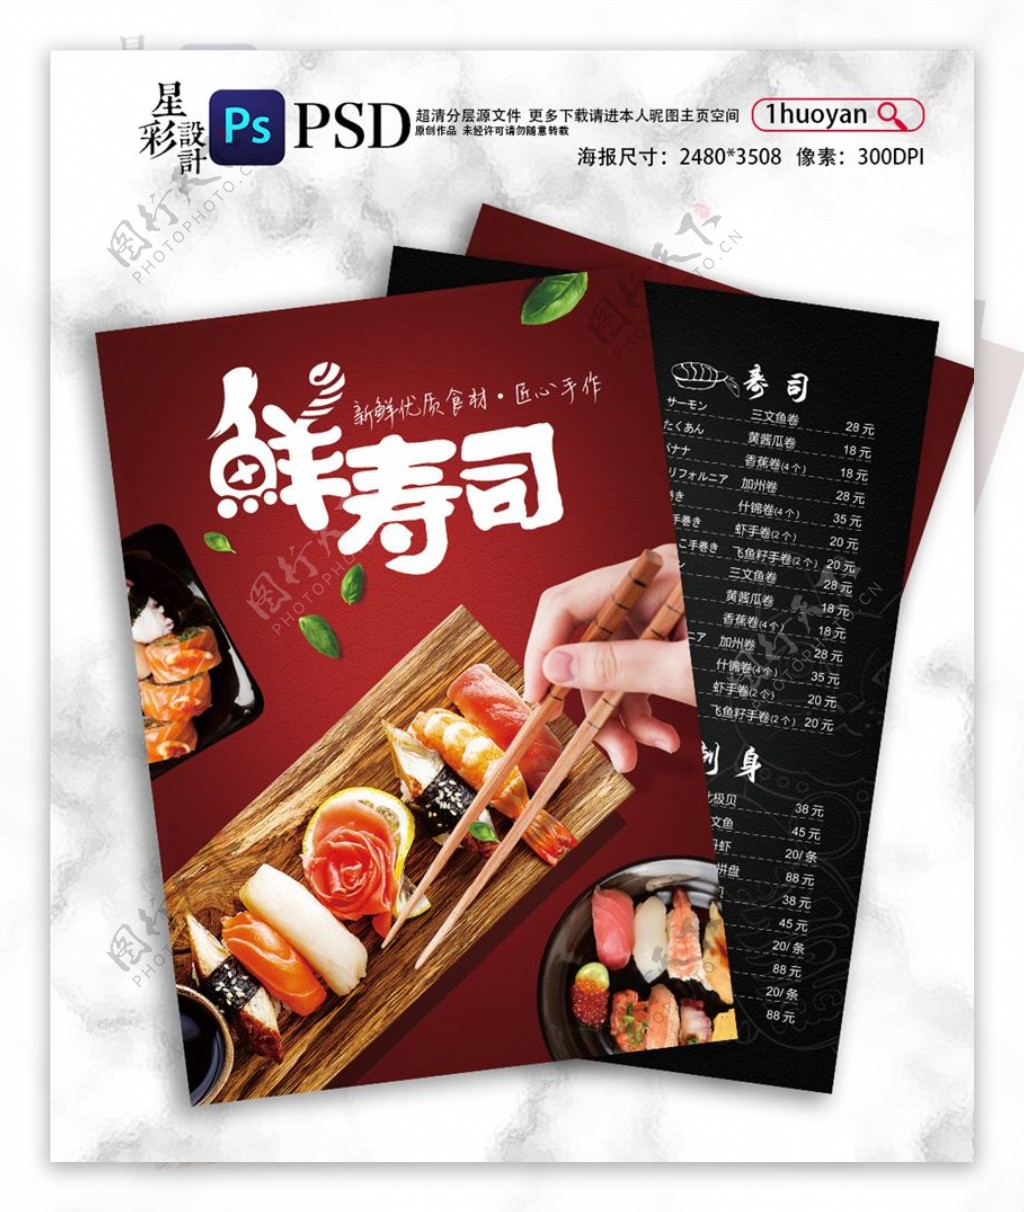 日本料理寿司菜单促销宣传单模板